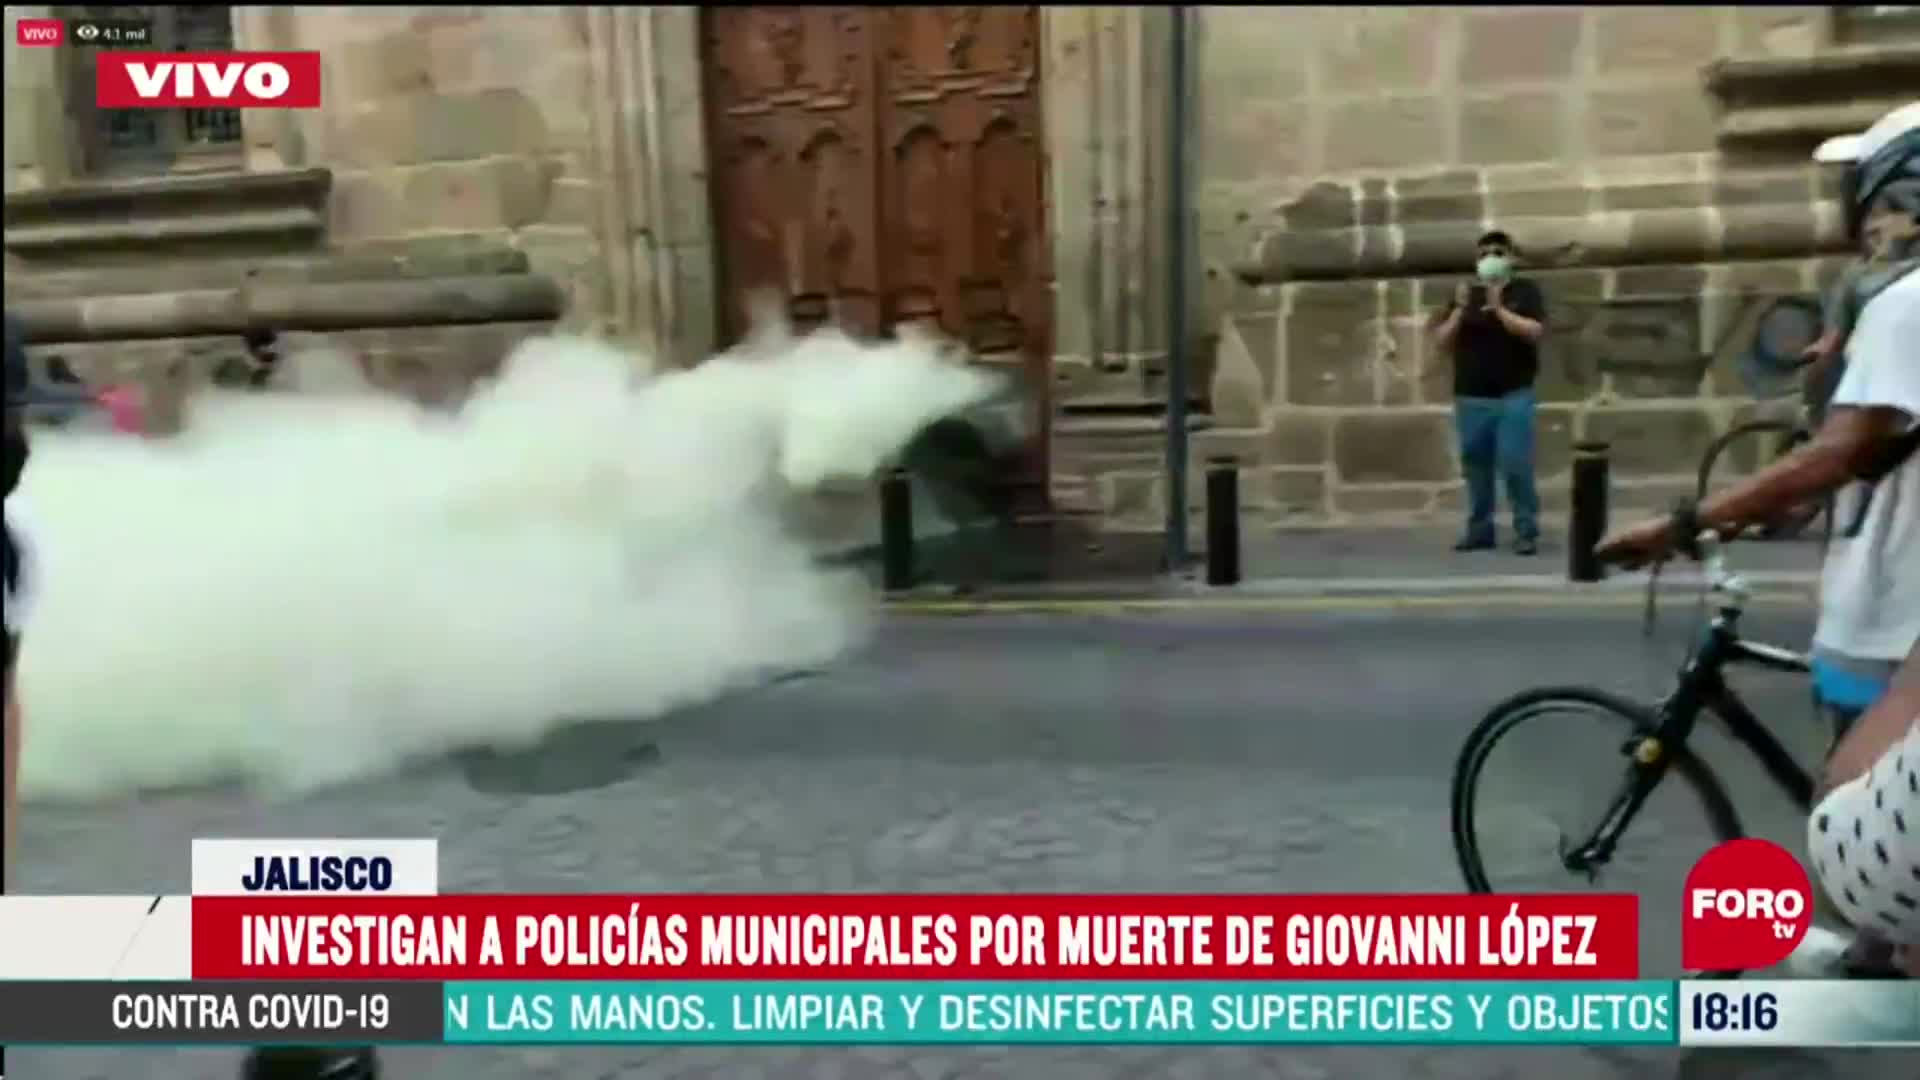 FOTO: lanzan gas a manifestantes desde palacio de gobierno de guadalajara